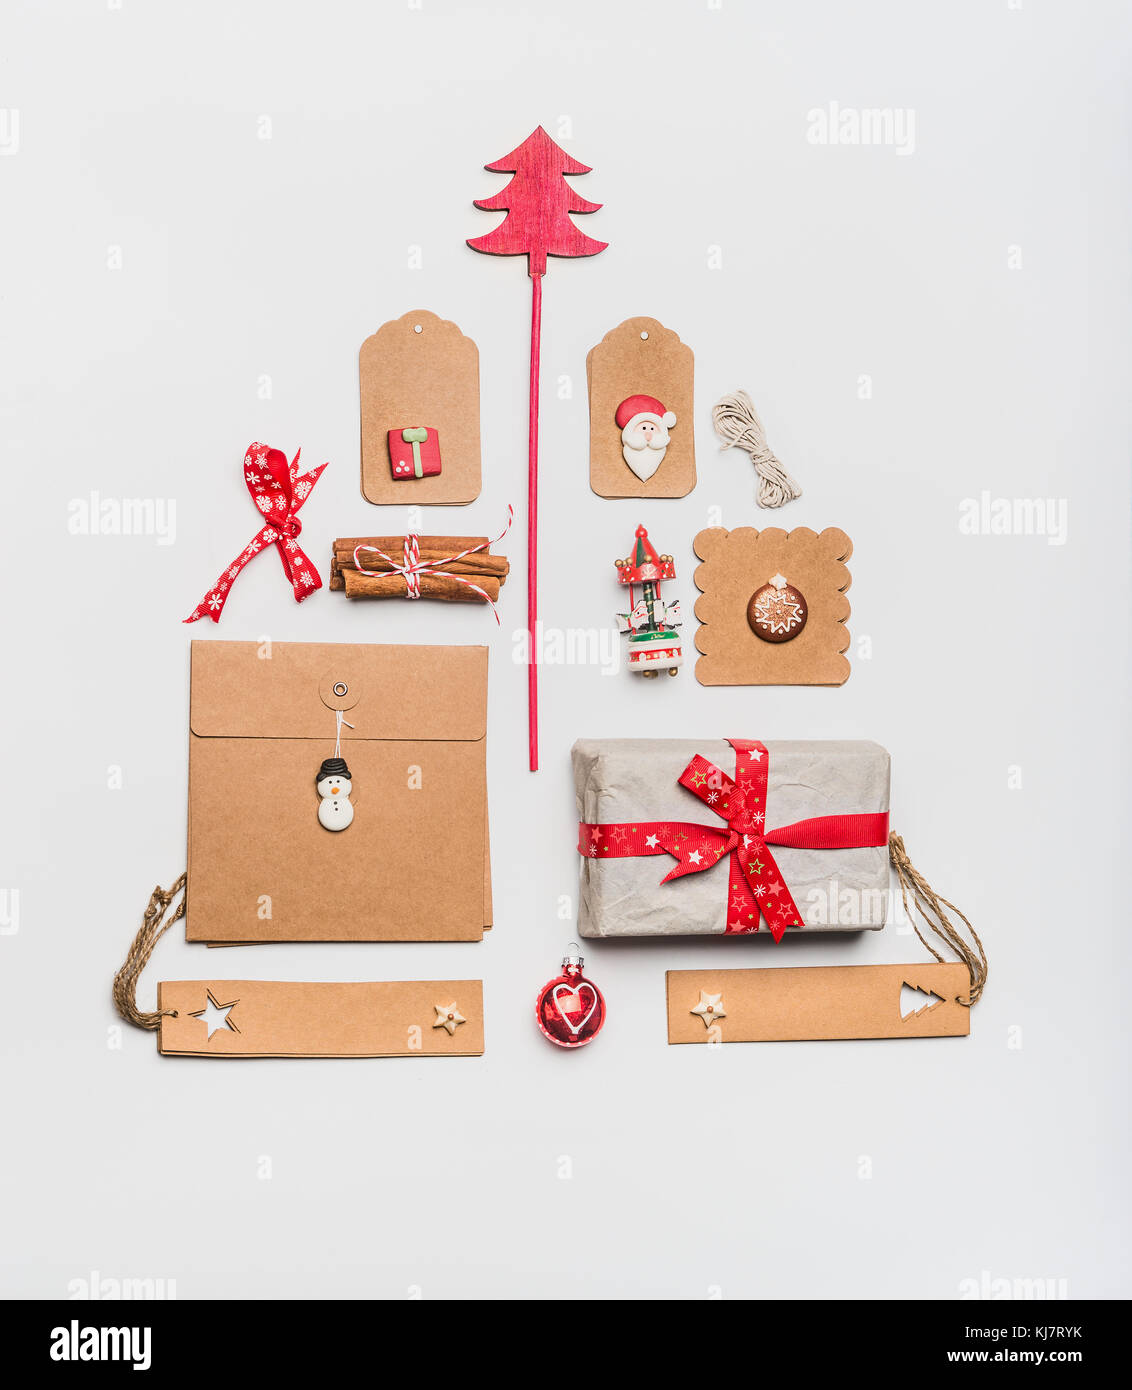 Weihnachtsbaum Layout mit Handwerk Papier Verpackung Geschenkboxen, Tags, Spielzeug, rot Urlaub Dekoration und Gewürzen auf weißem Schreibtisch Hintergrund, Ansicht von oben, Fla Stockfoto